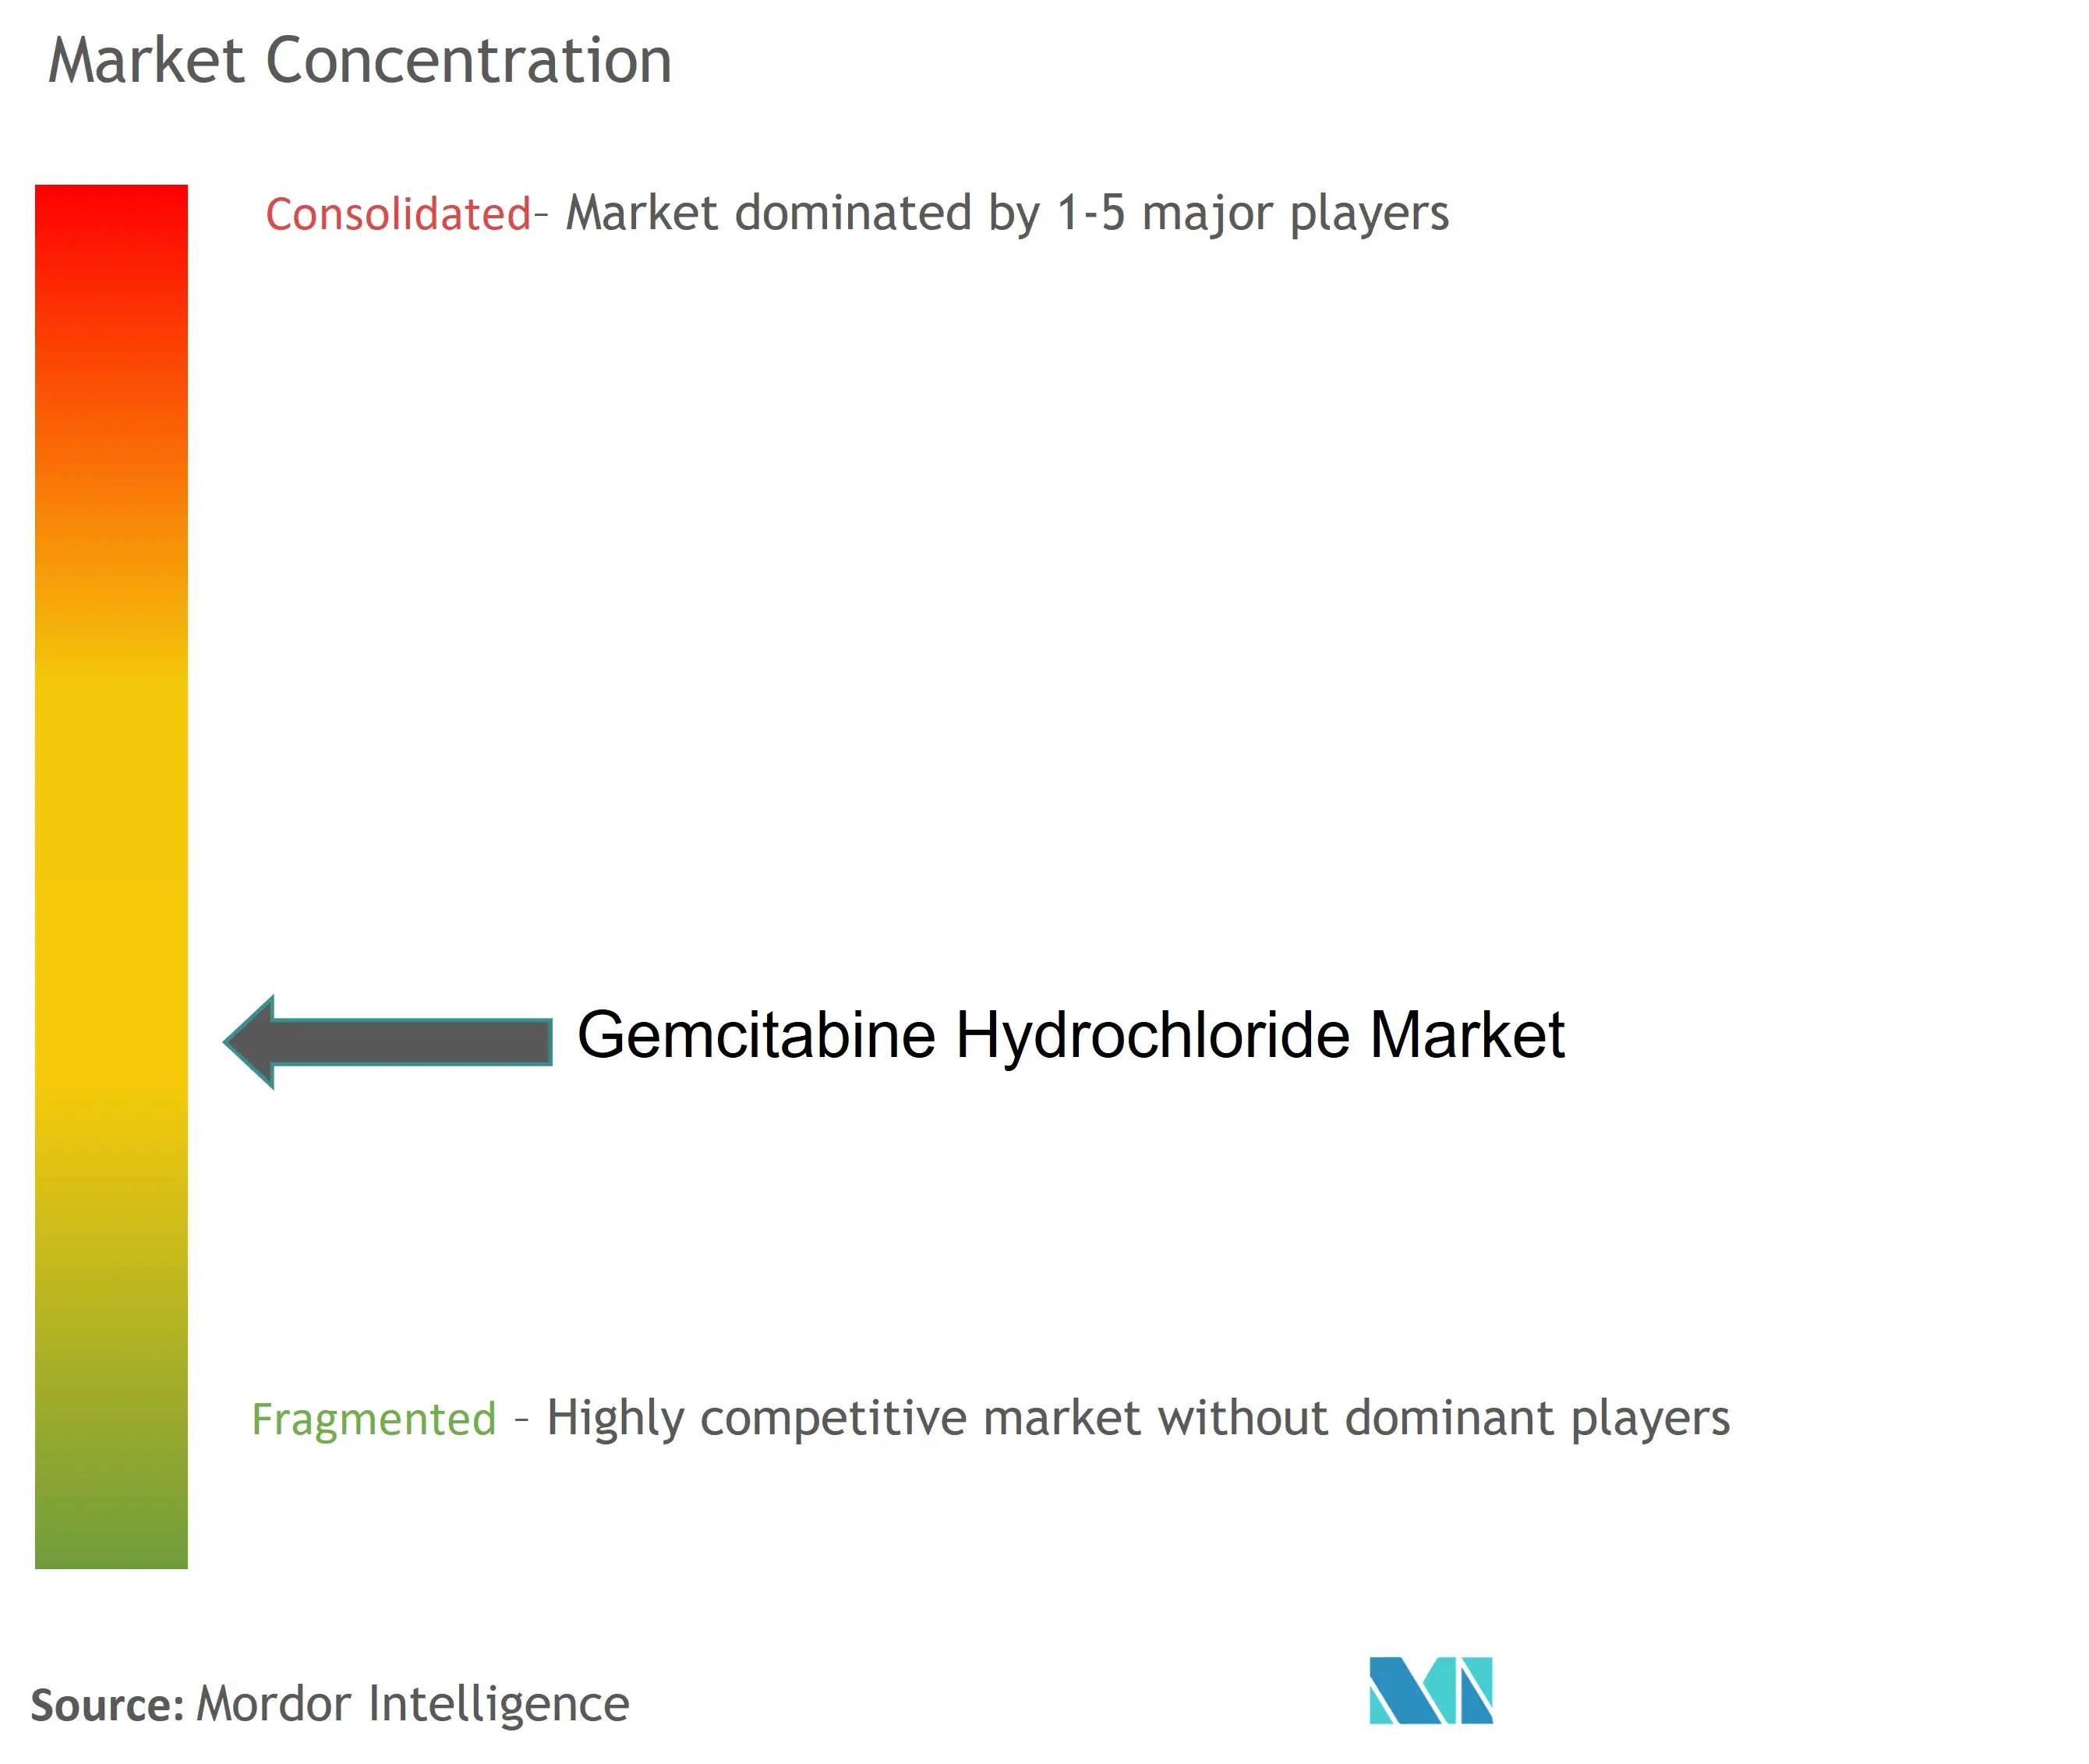 Concentração do mercado de cloridrato de gencitabina